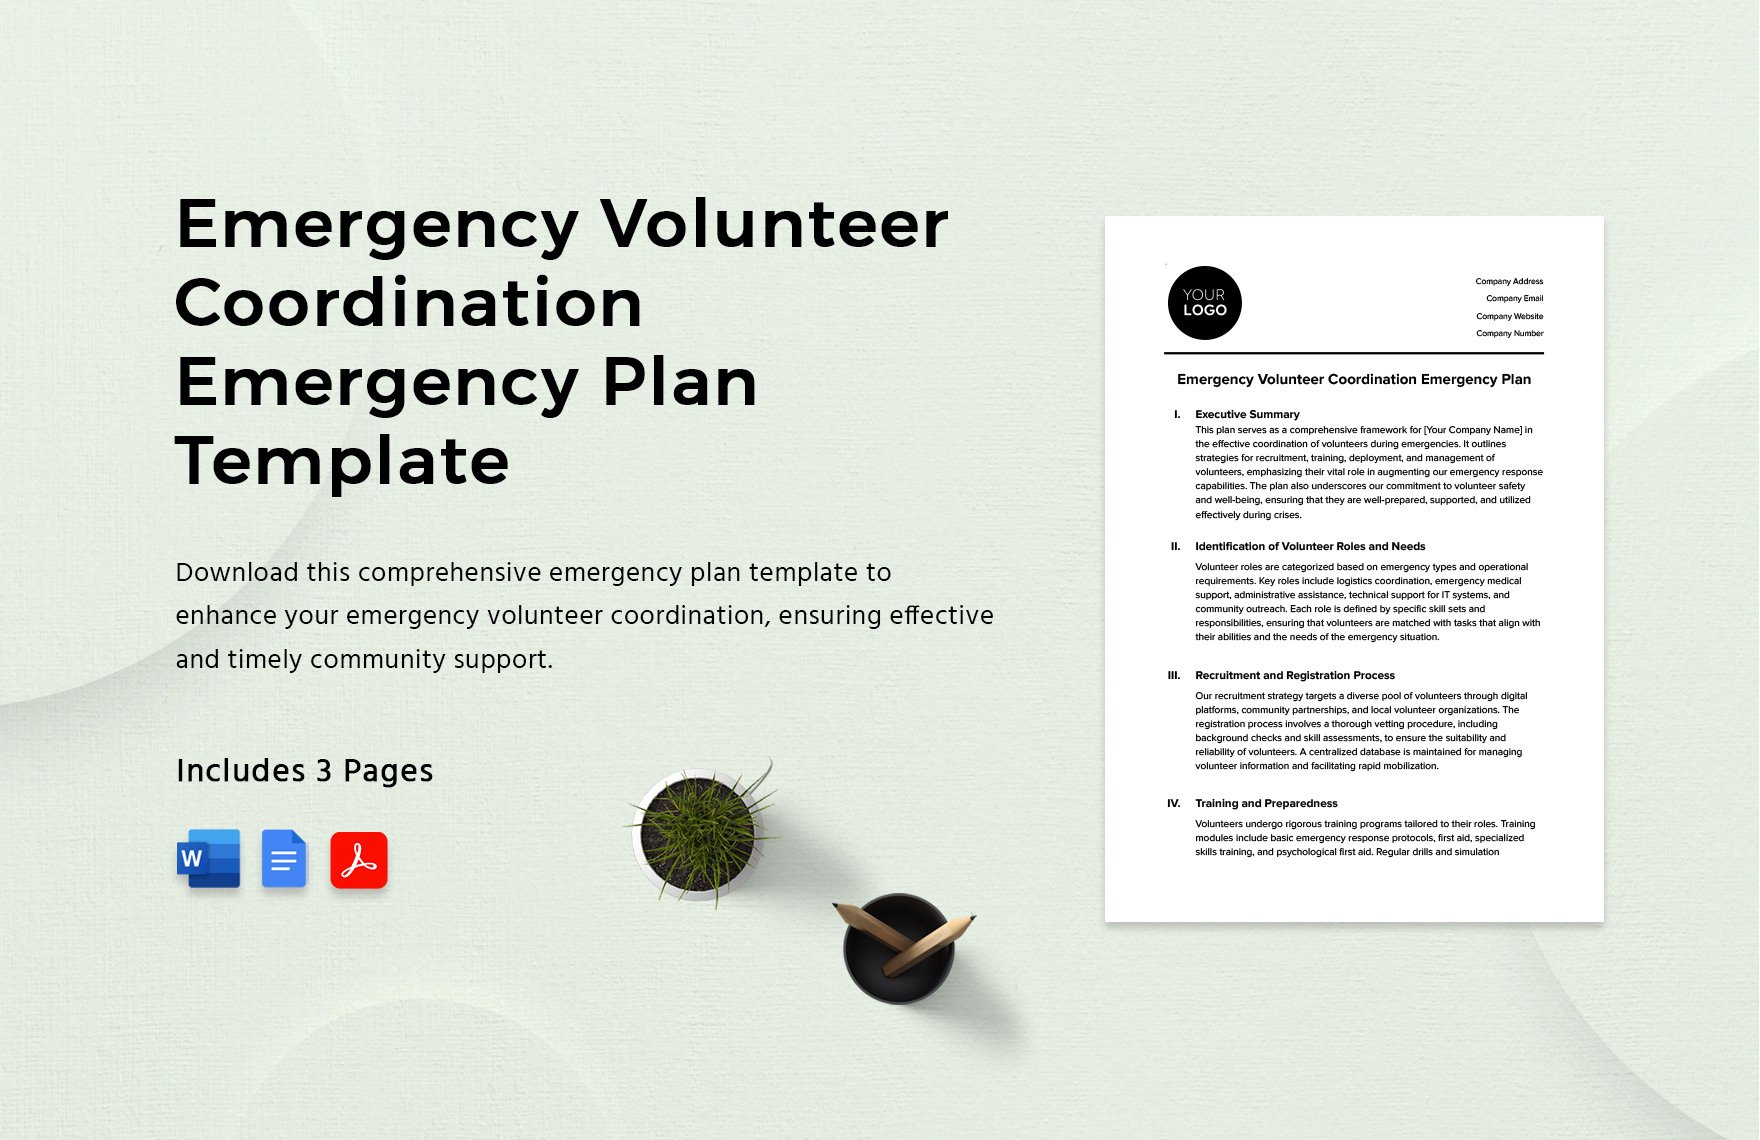 Emergency Volunteer Coordination Emergency Plan Template in Word, Google Docs, PDF